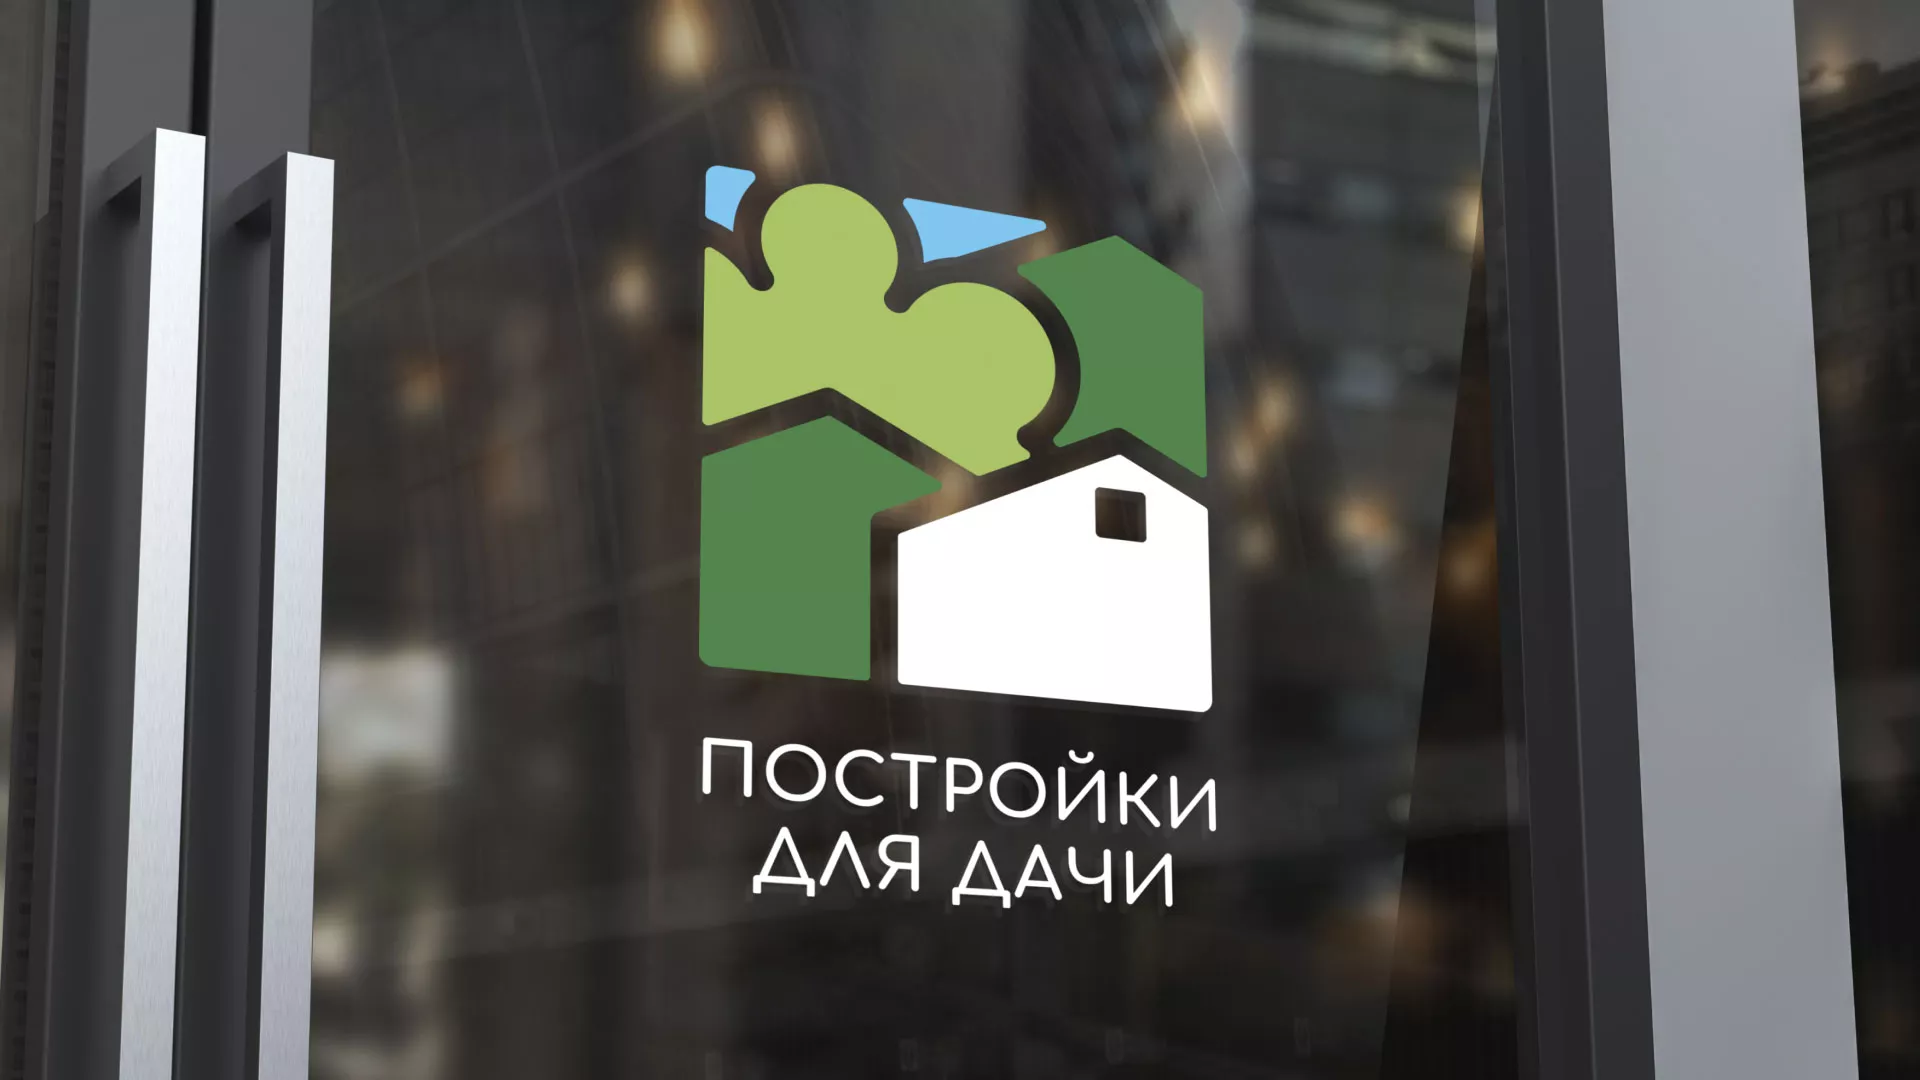 Разработка логотипа в Усинске для компании «Постройки для дачи»